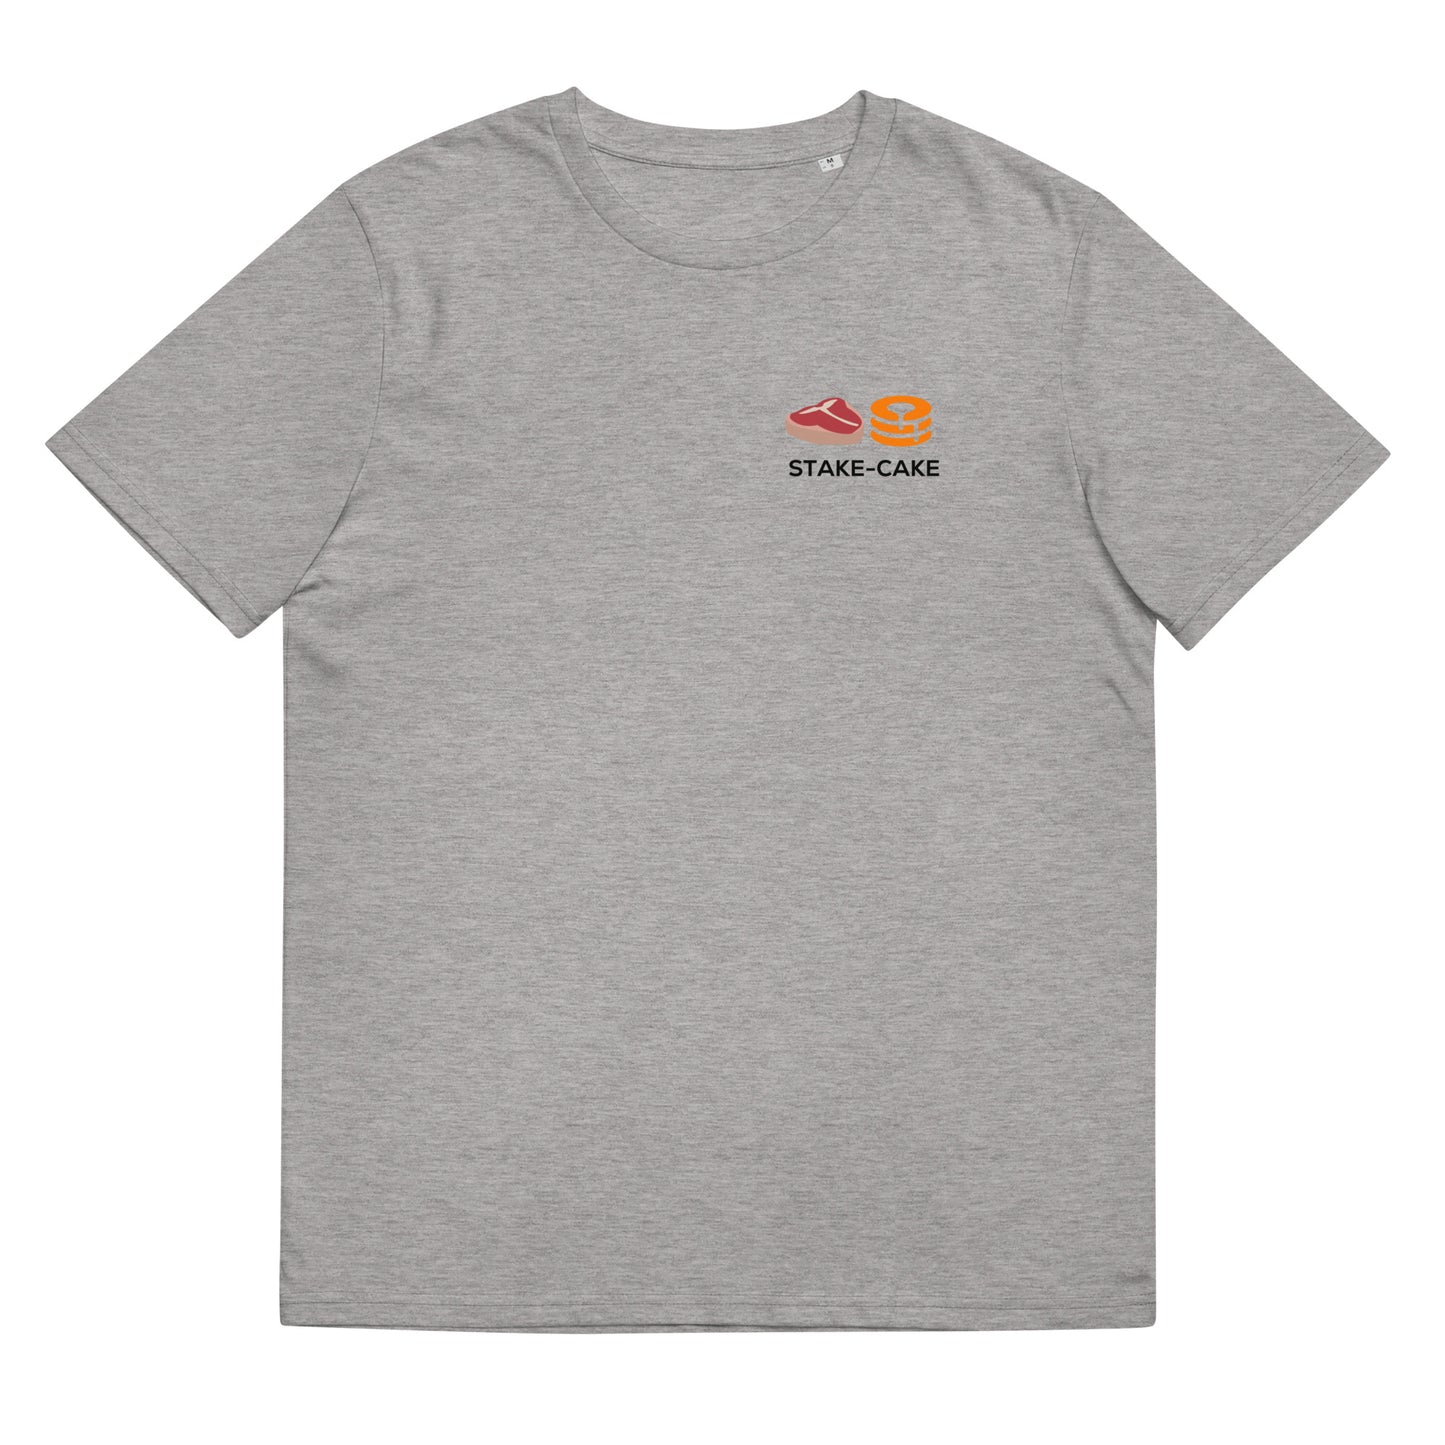 xMPL T-shirt (Light)